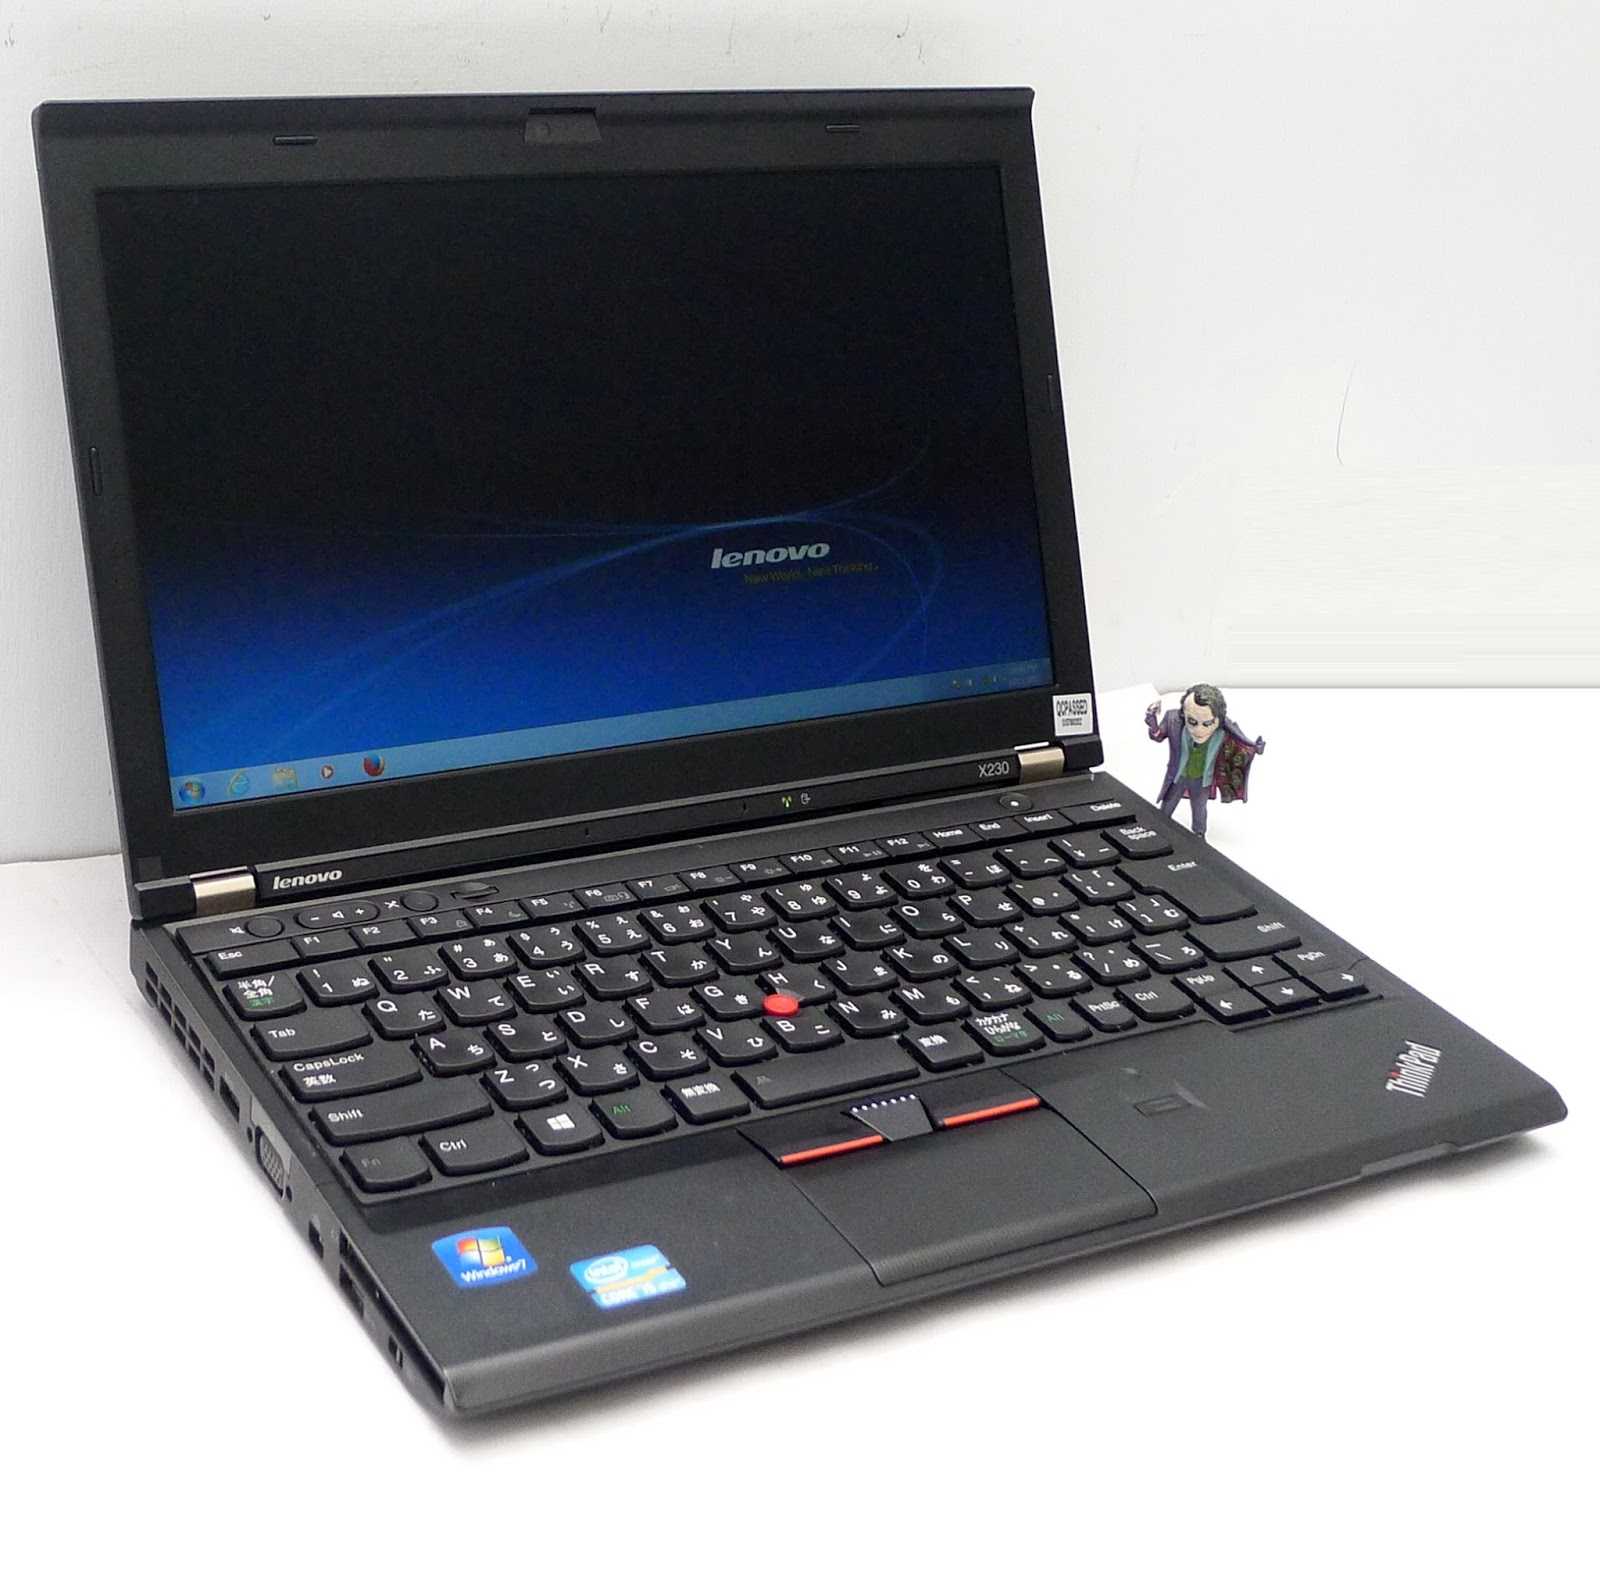 Lenovo thinkpad x121e